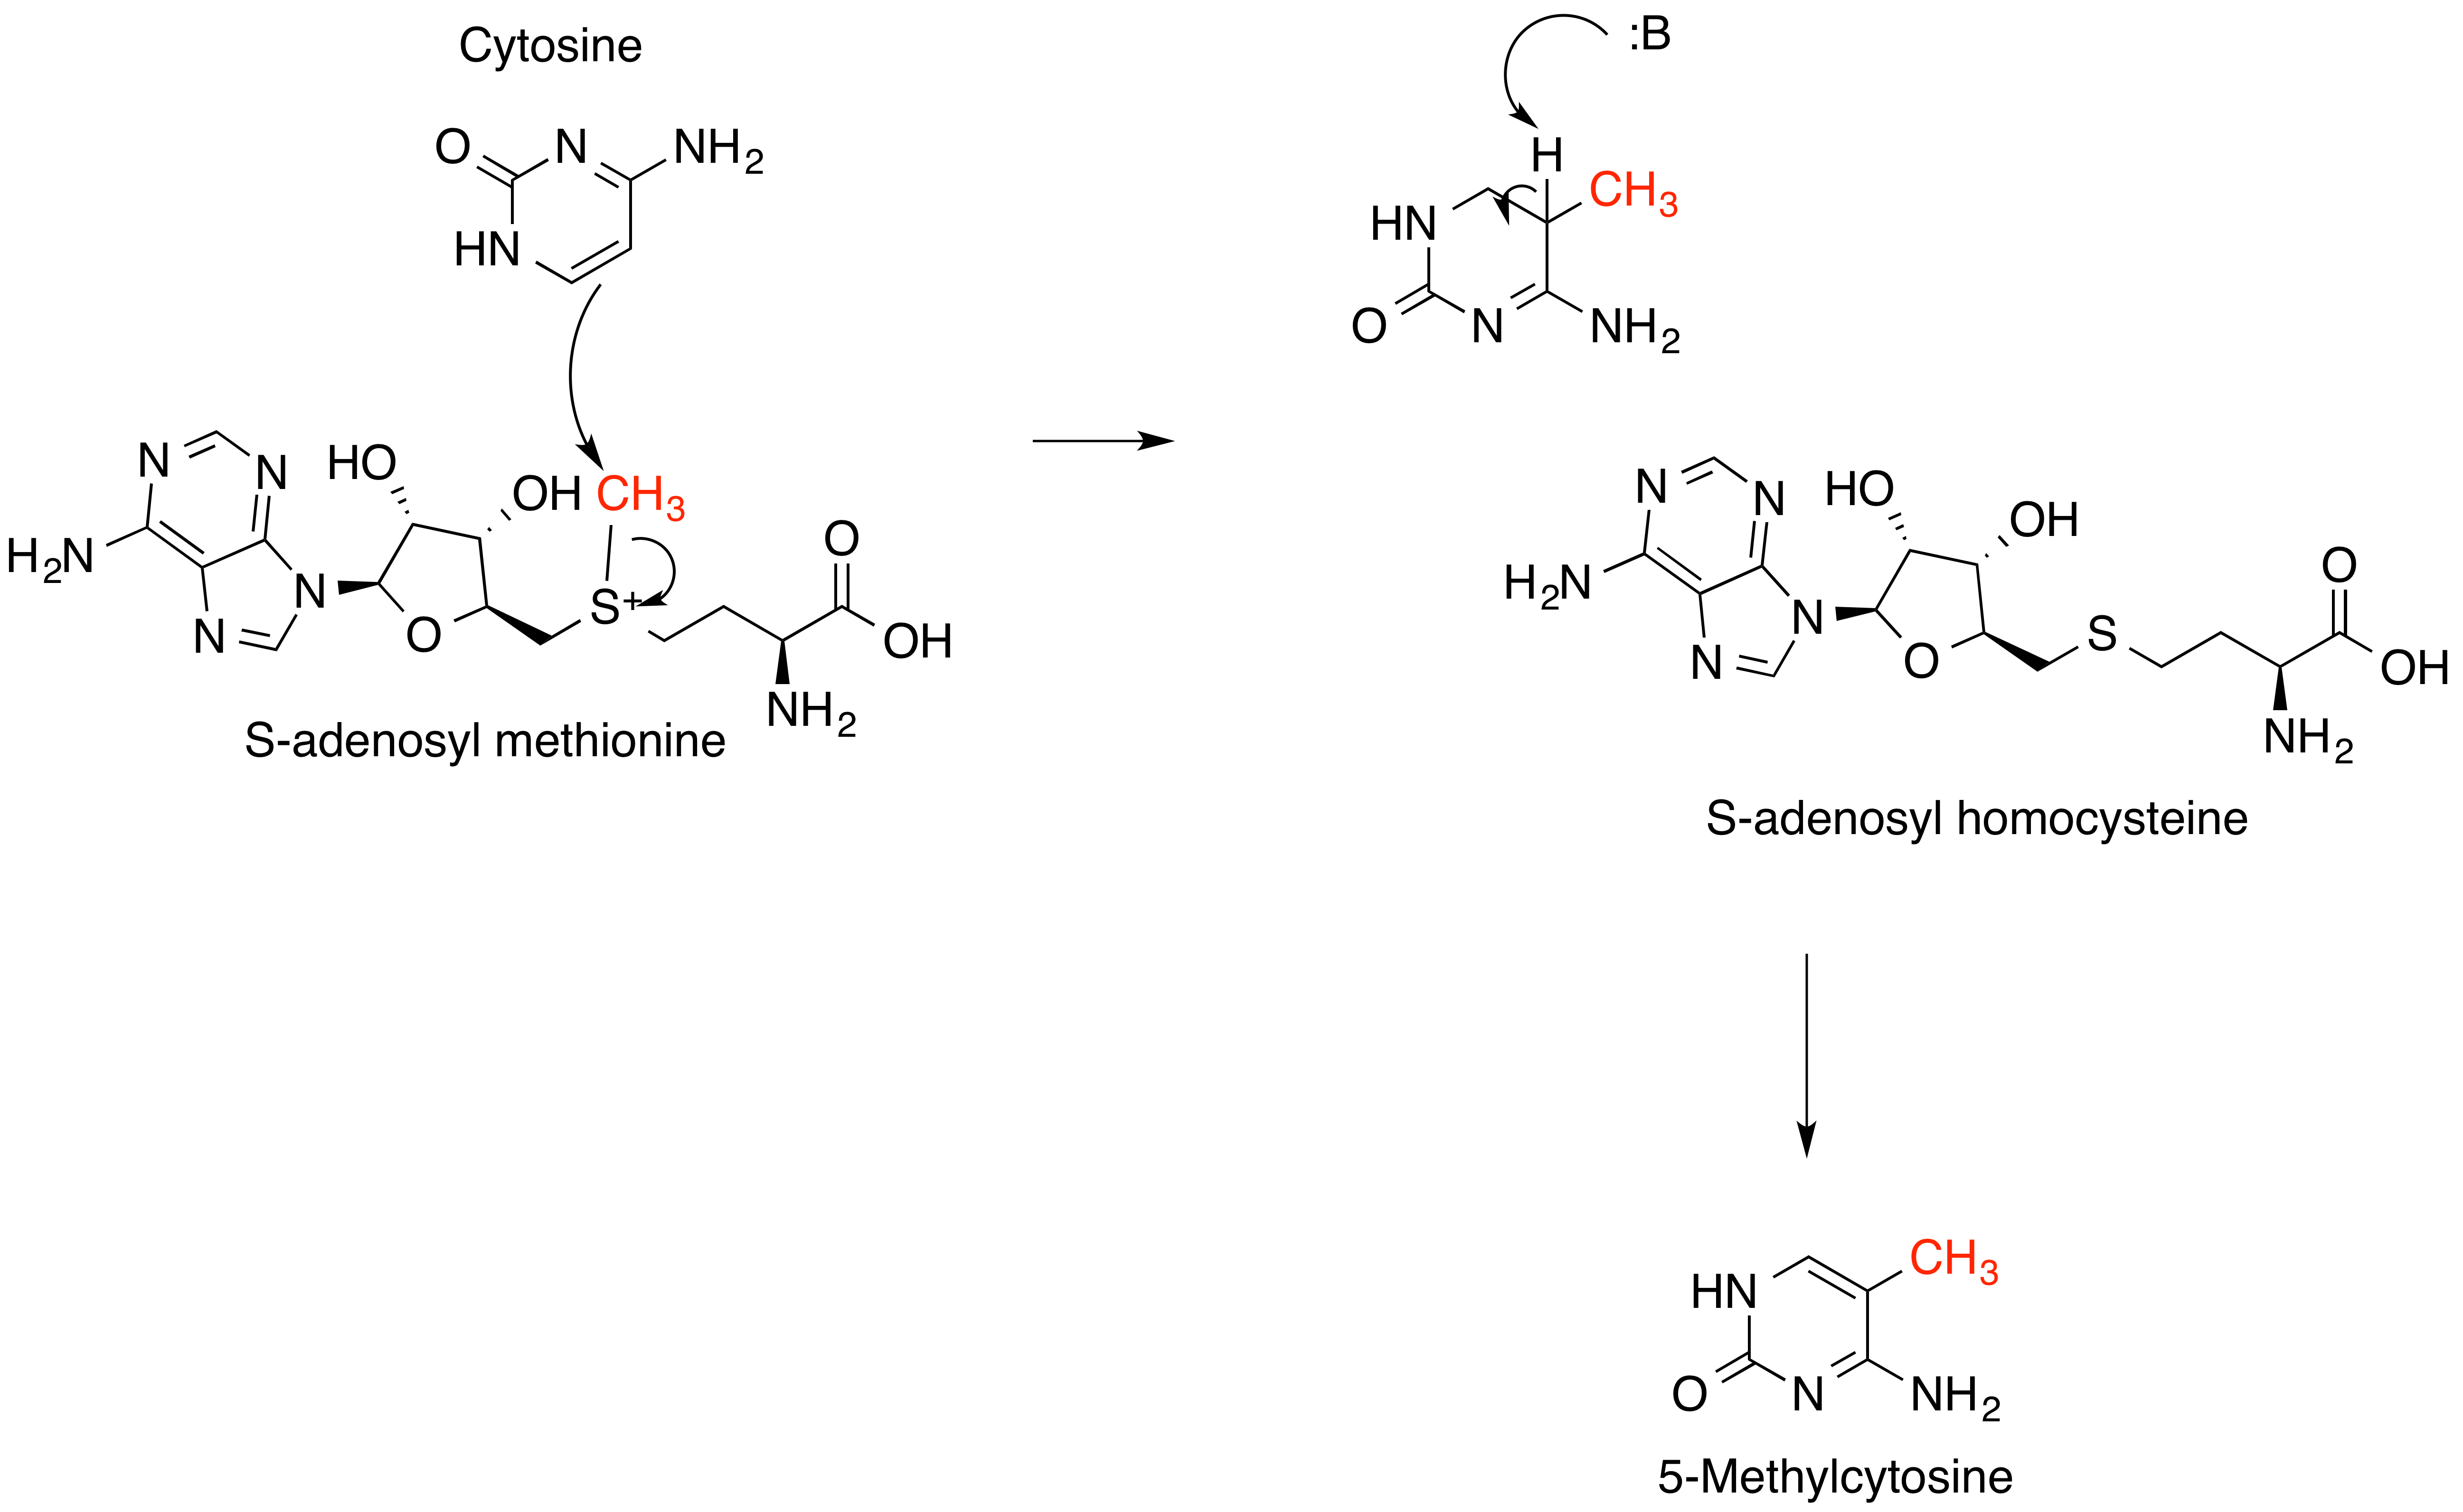 Участие s аденозилметионина в реакциях трансметилирования